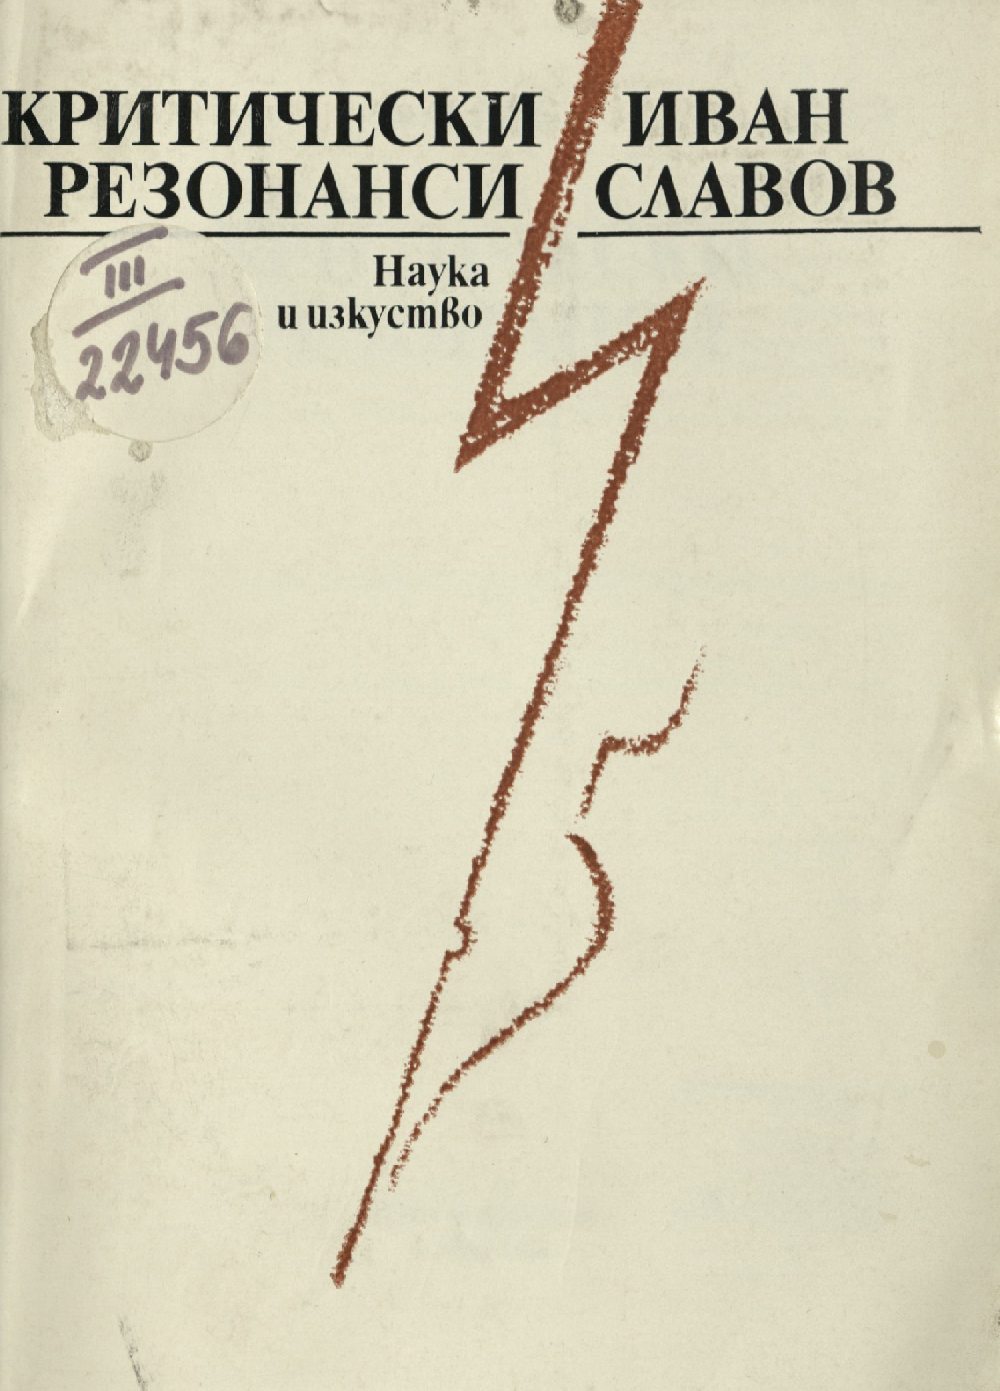 Иван Славов. Критически резонанси, 1982